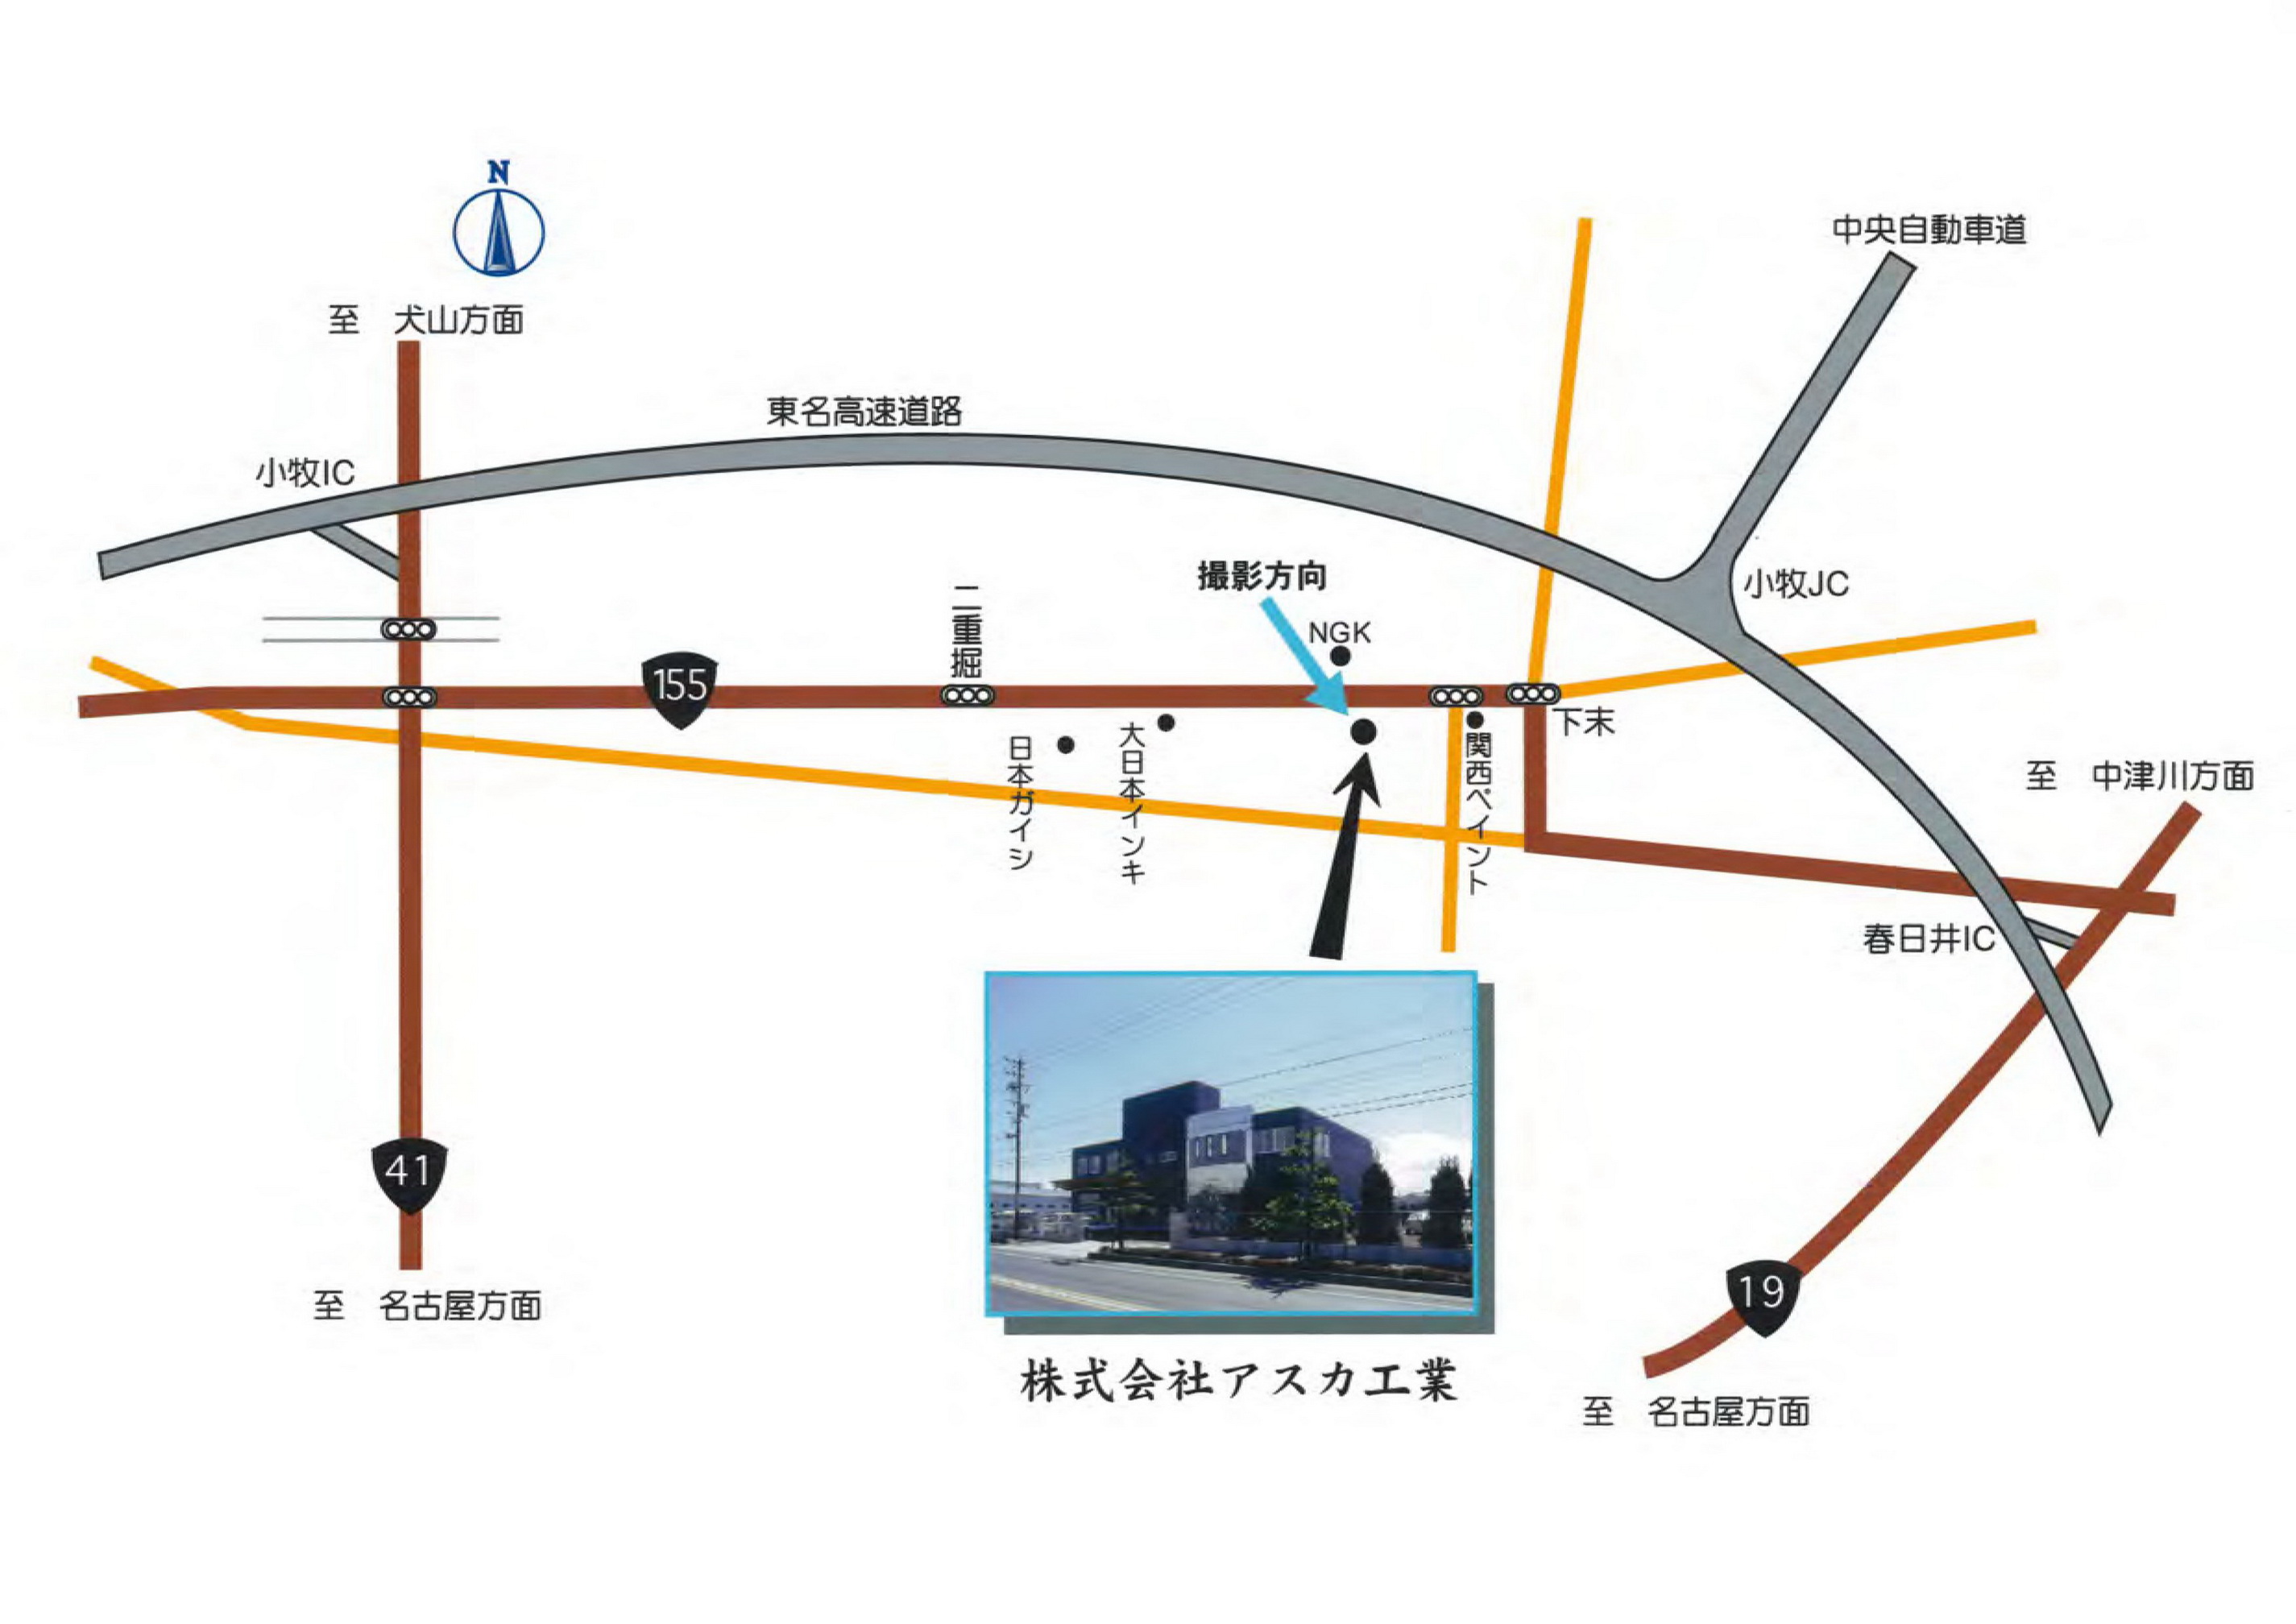 愛知県小牧市の株式会社アスカ工業へのアクセスはこちら